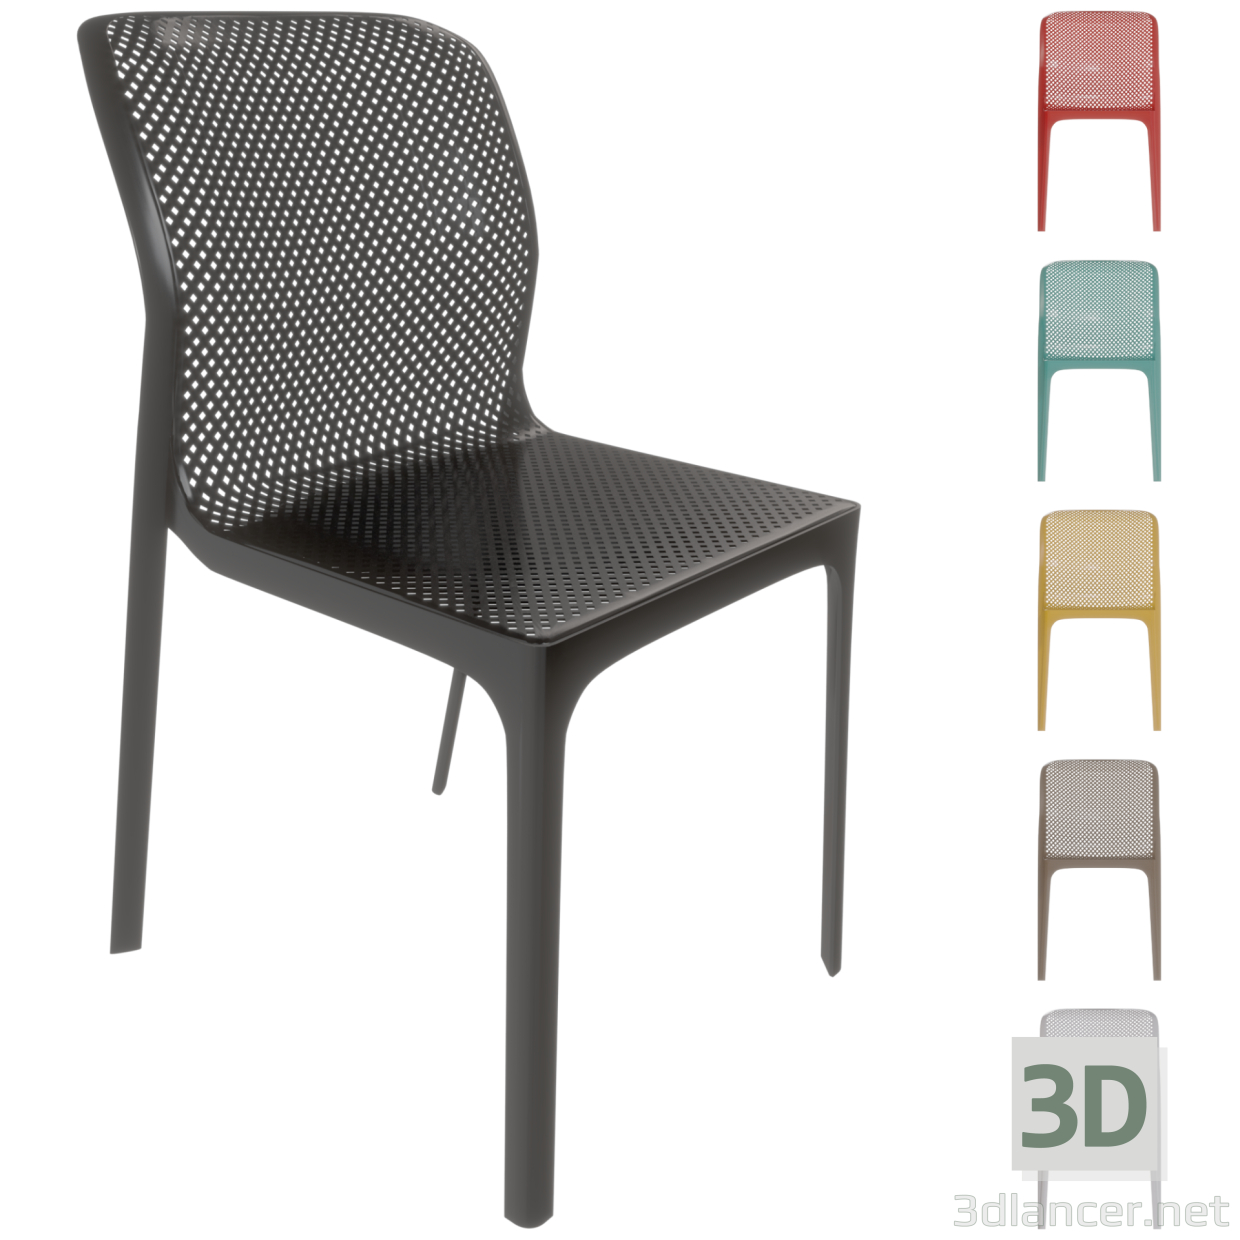 3d Пластиковий стілець BIT без підлокітників Торгової марки NARDI у 6 різних колірних рішеннях. модель купити - зображення